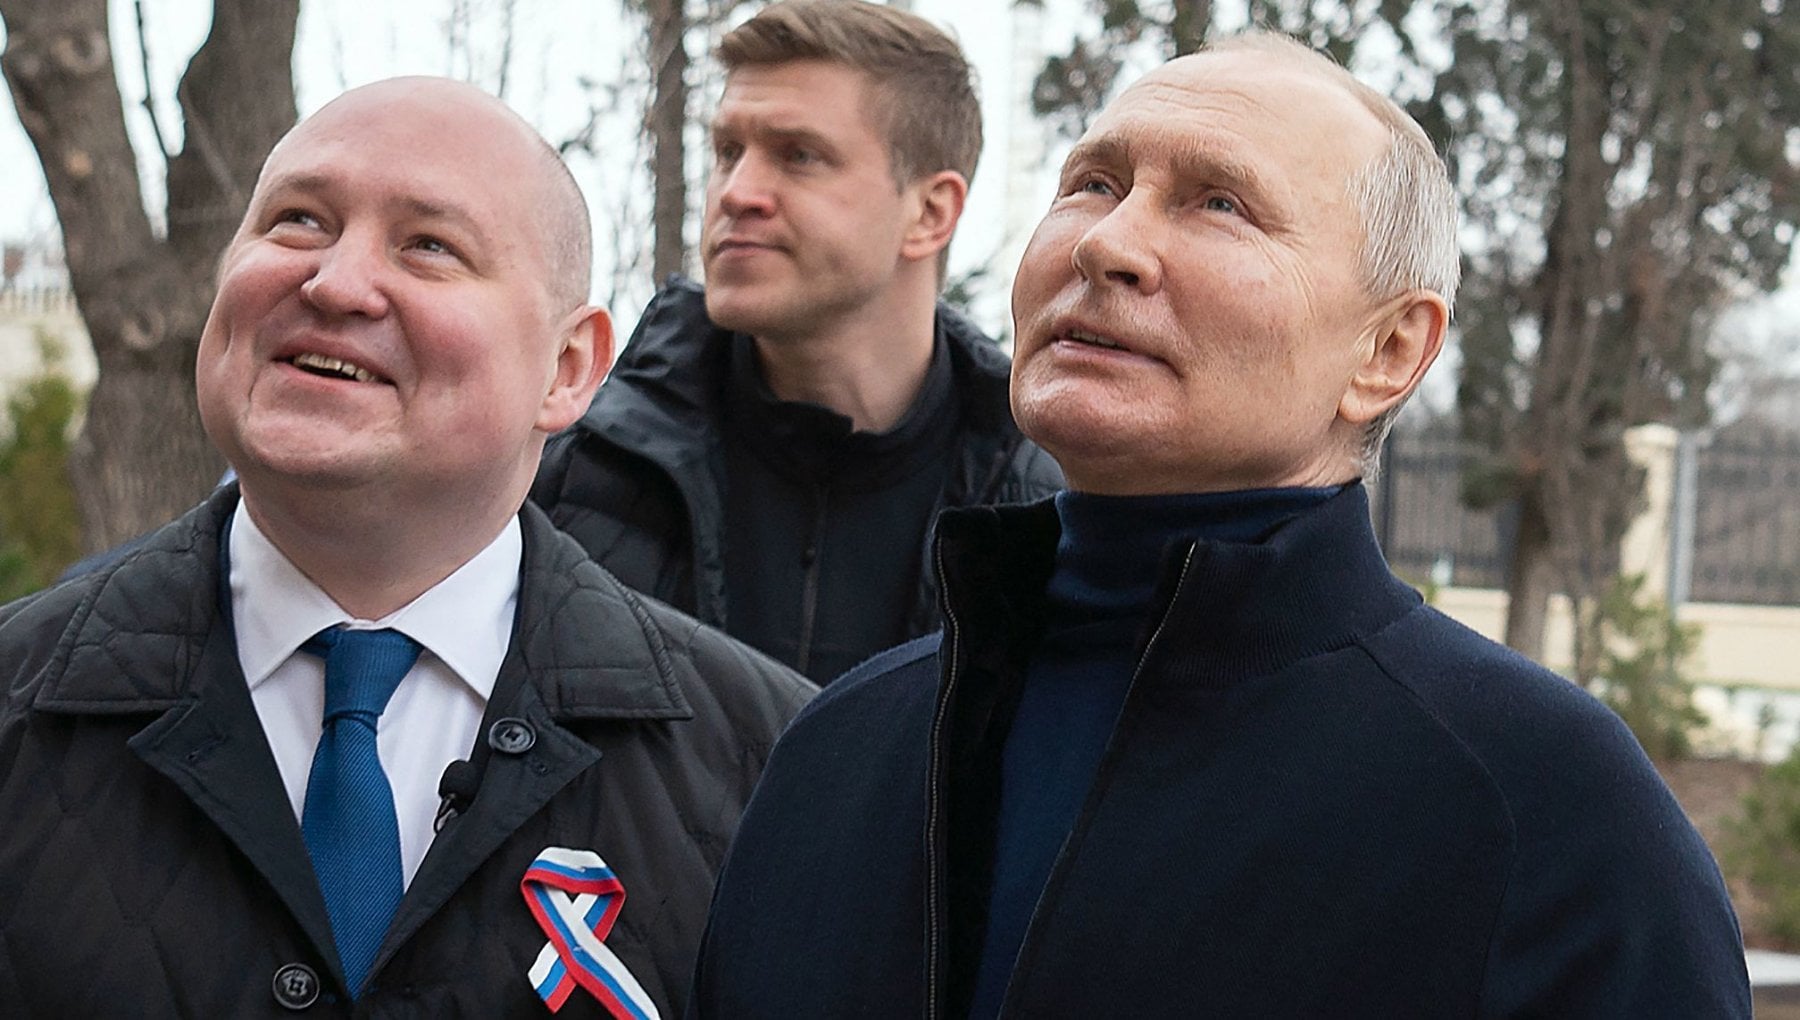 Il presidente Putin se ne frega delle condanne della Corte dell’Aja e visita le terre del Donbass liberate